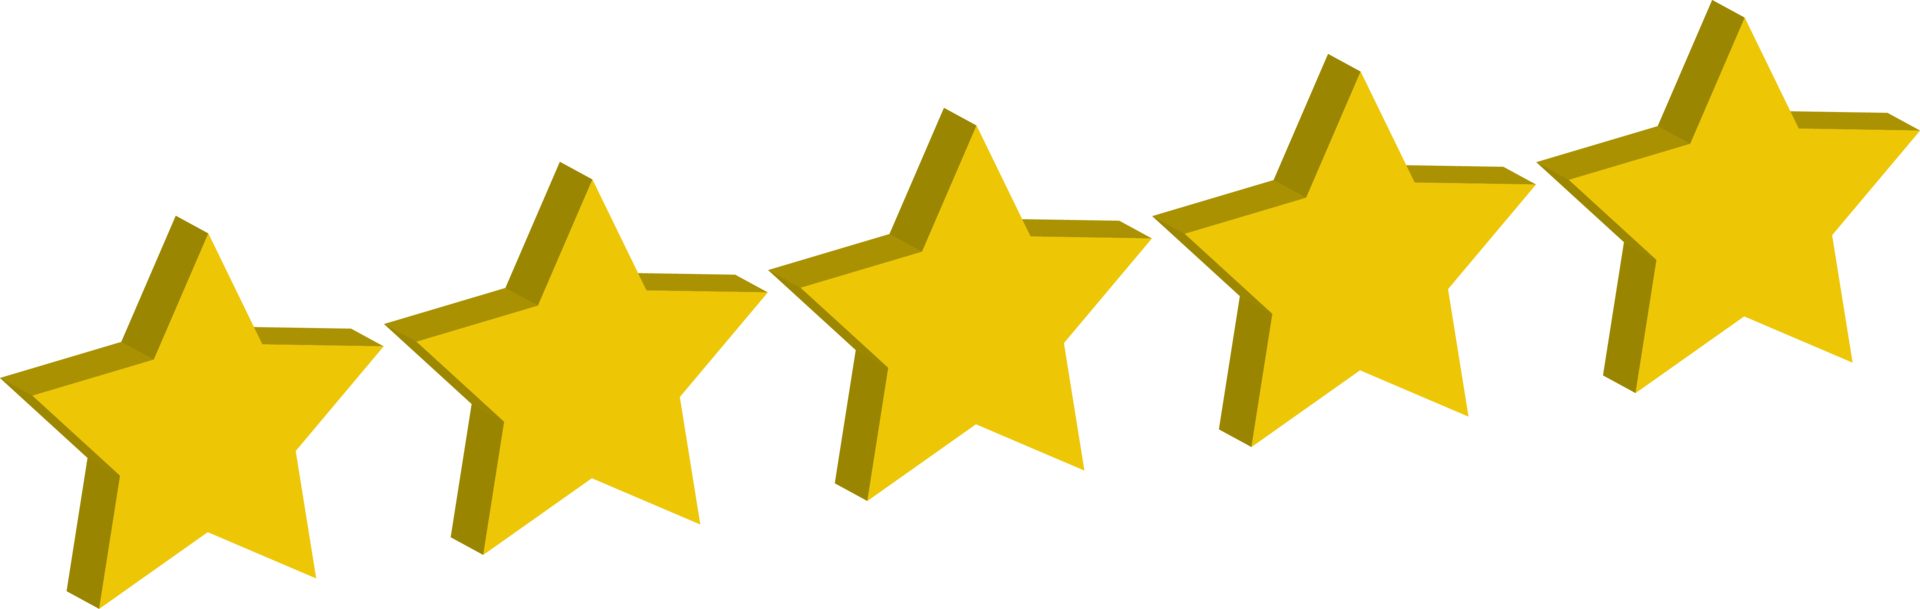 5 étoiles 3d évaluation de l'or jaune png